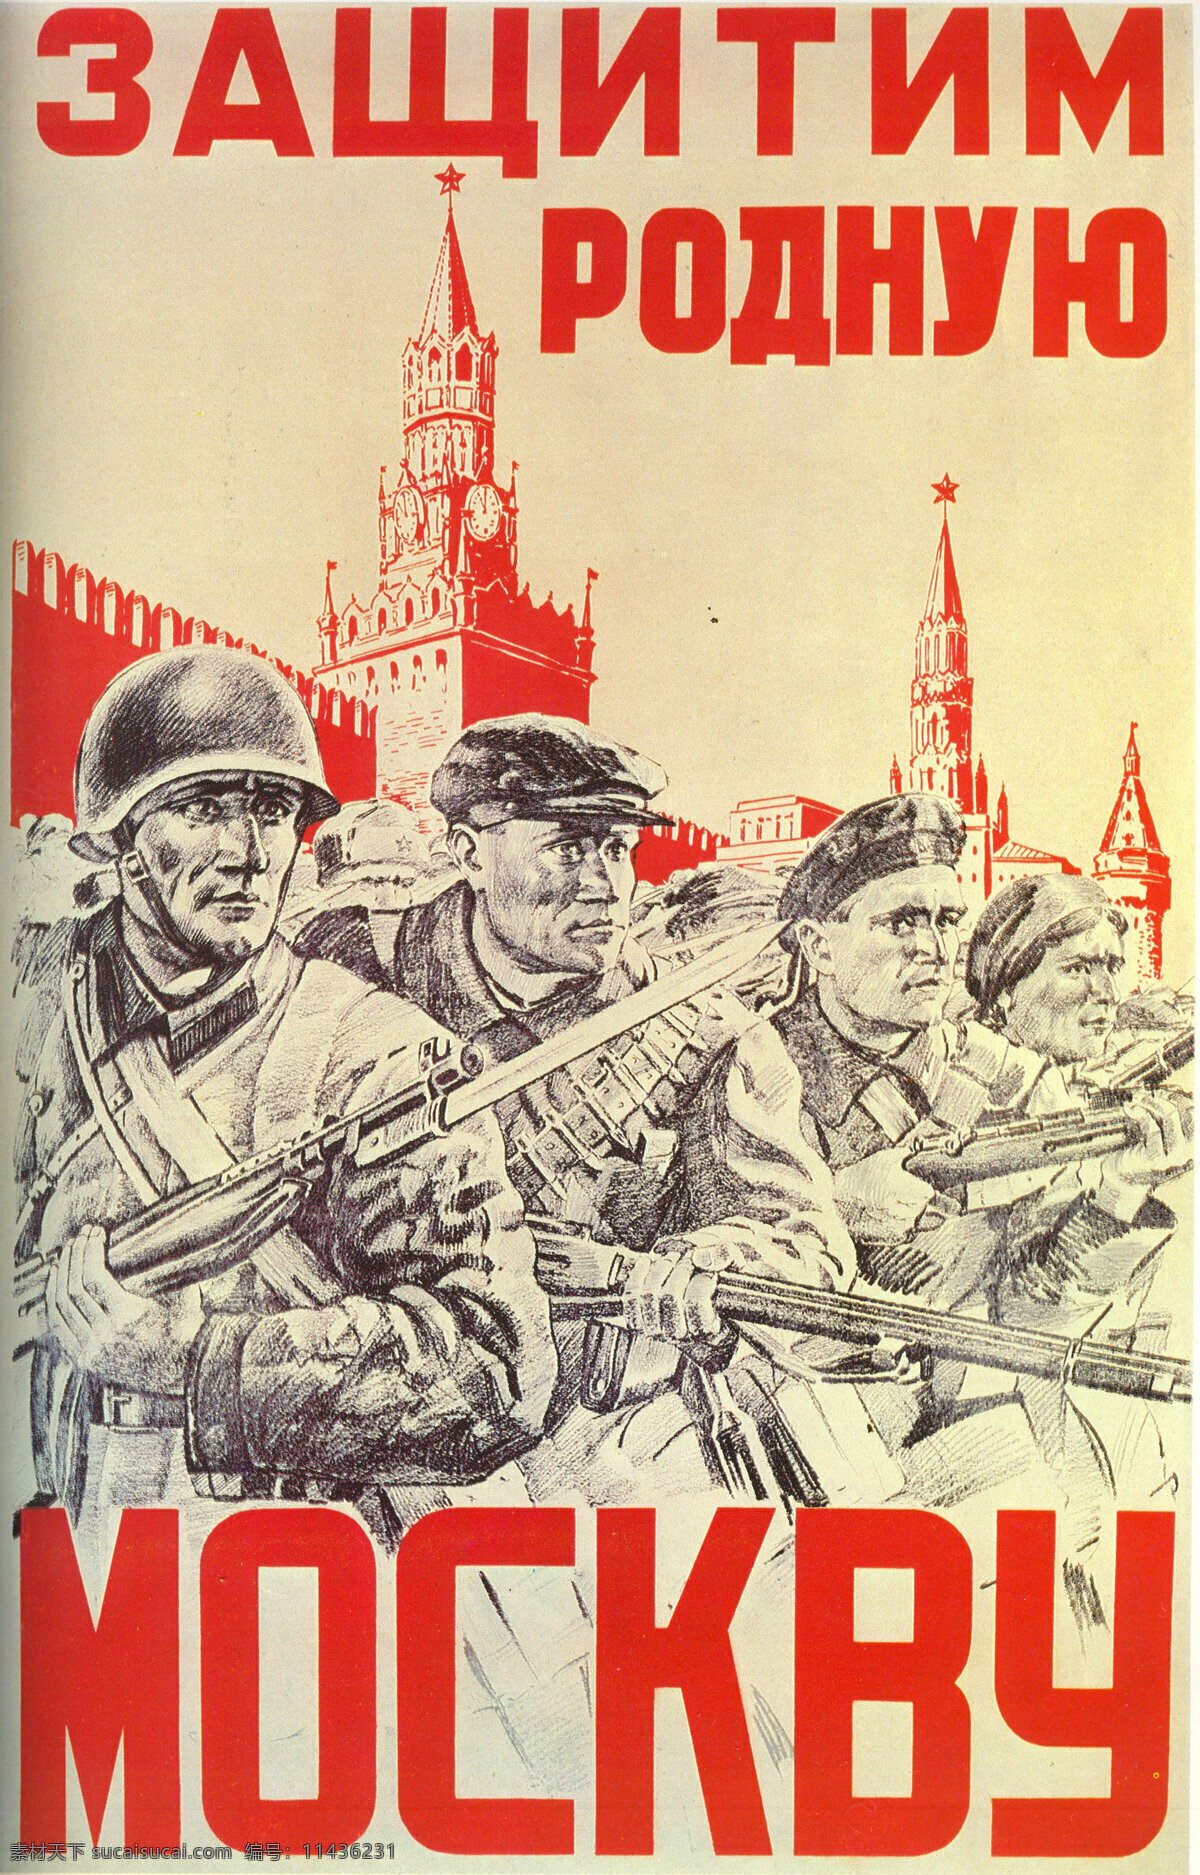 绘画书法 文化艺术 宣传海报 宣传画 反 法西斯 设计素材 模板下载 苏联 时期 法西 宣传单 彩页 dm